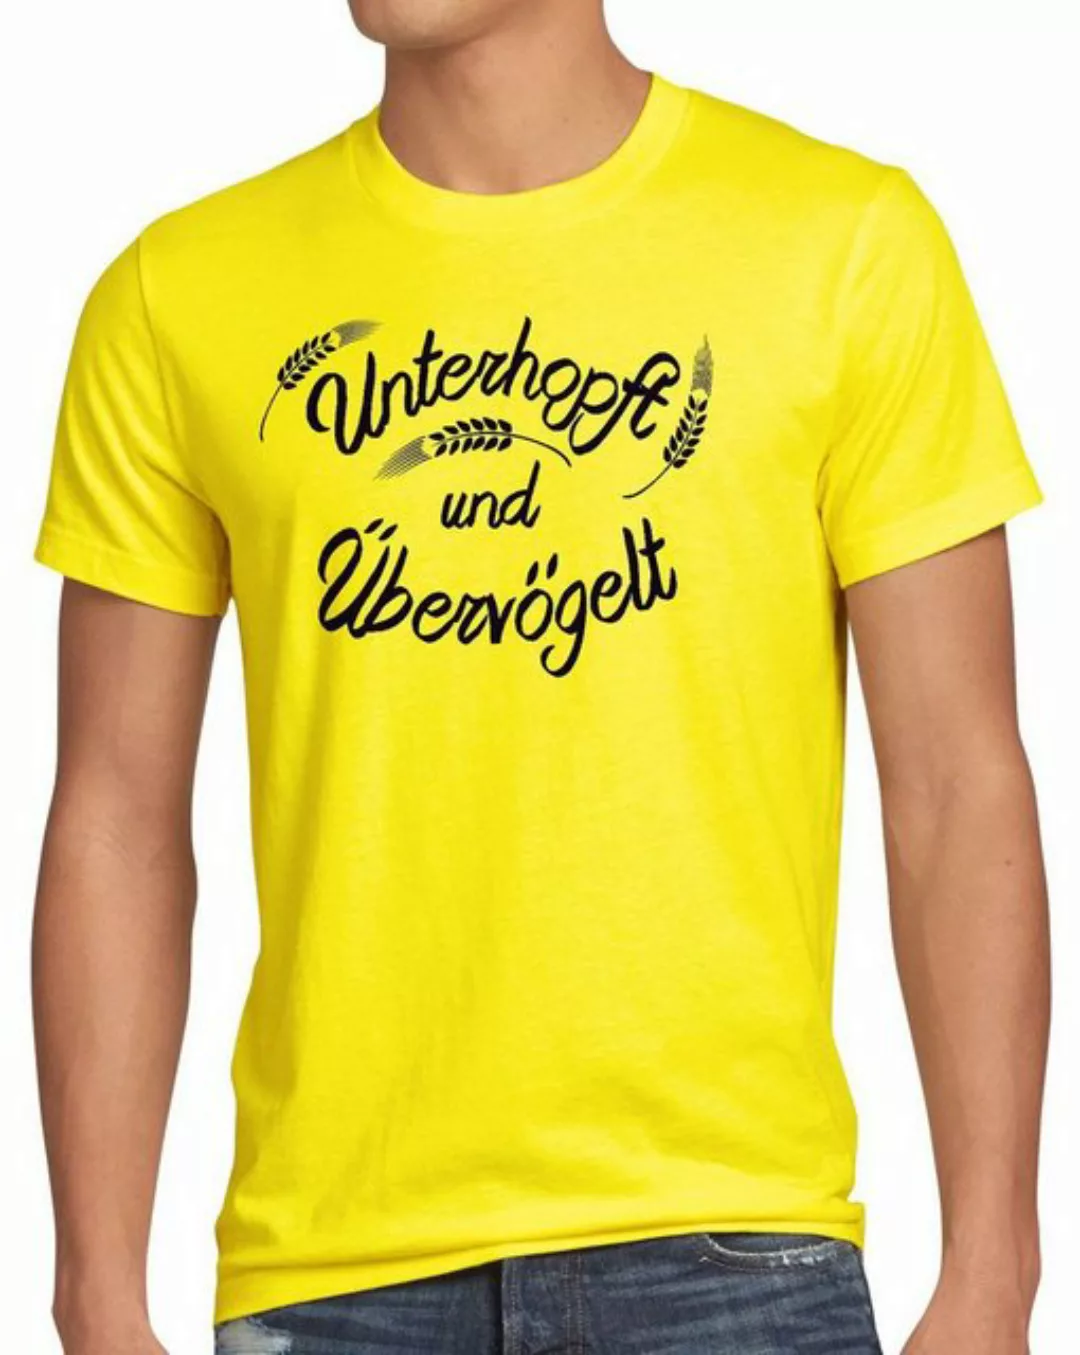 style3 Print-Shirt Herren T-Shirt Unterhopft Übervögelt Kult Shirt Funshirt günstig online kaufen